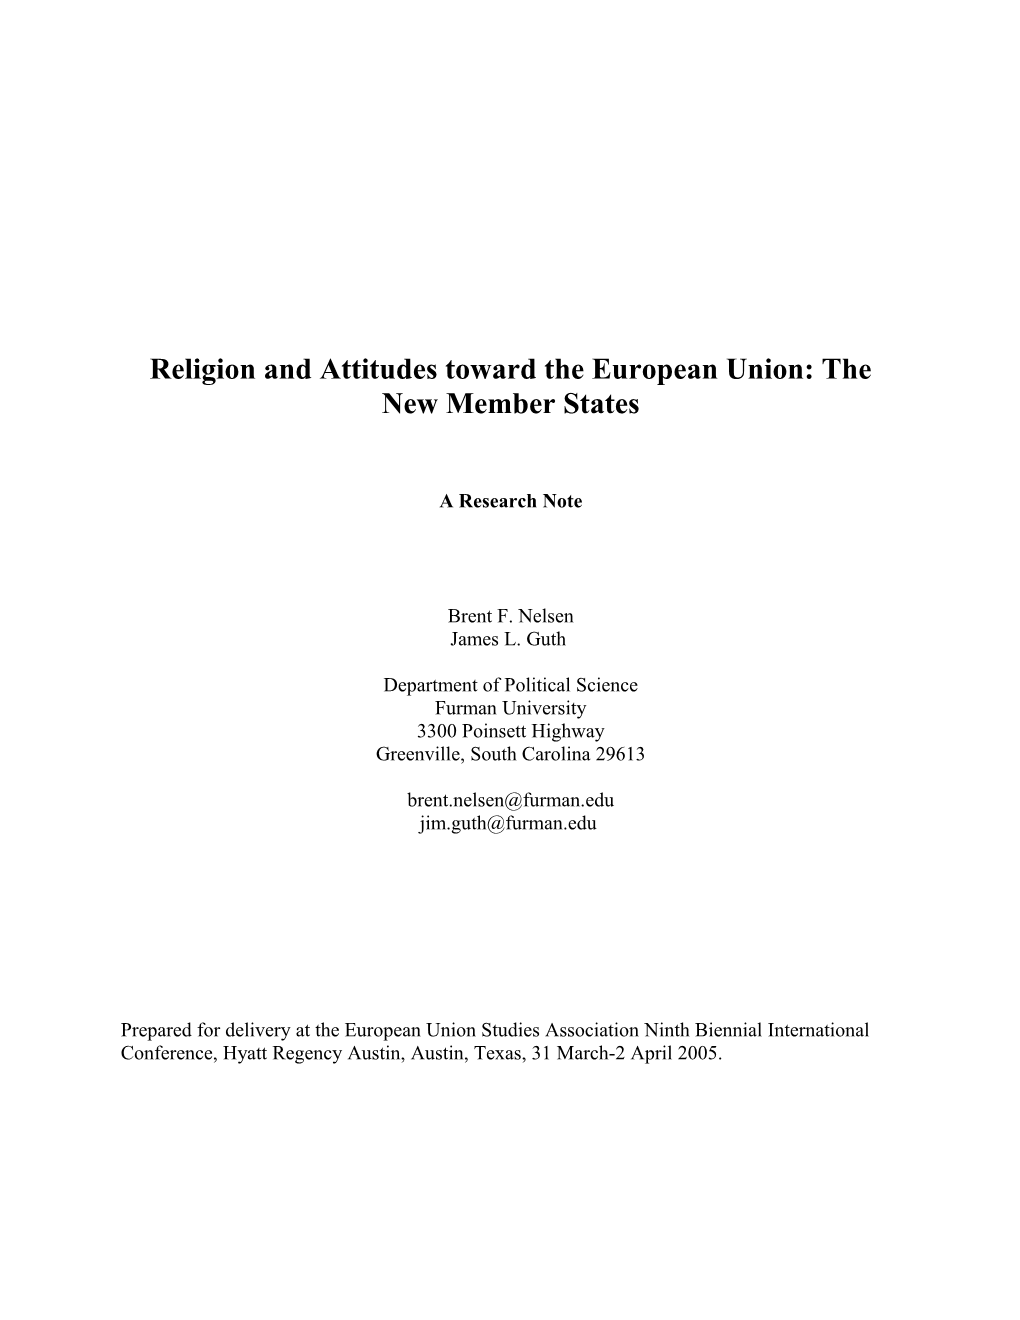 Religion and Attitudes Toward the European Union: the New Member States